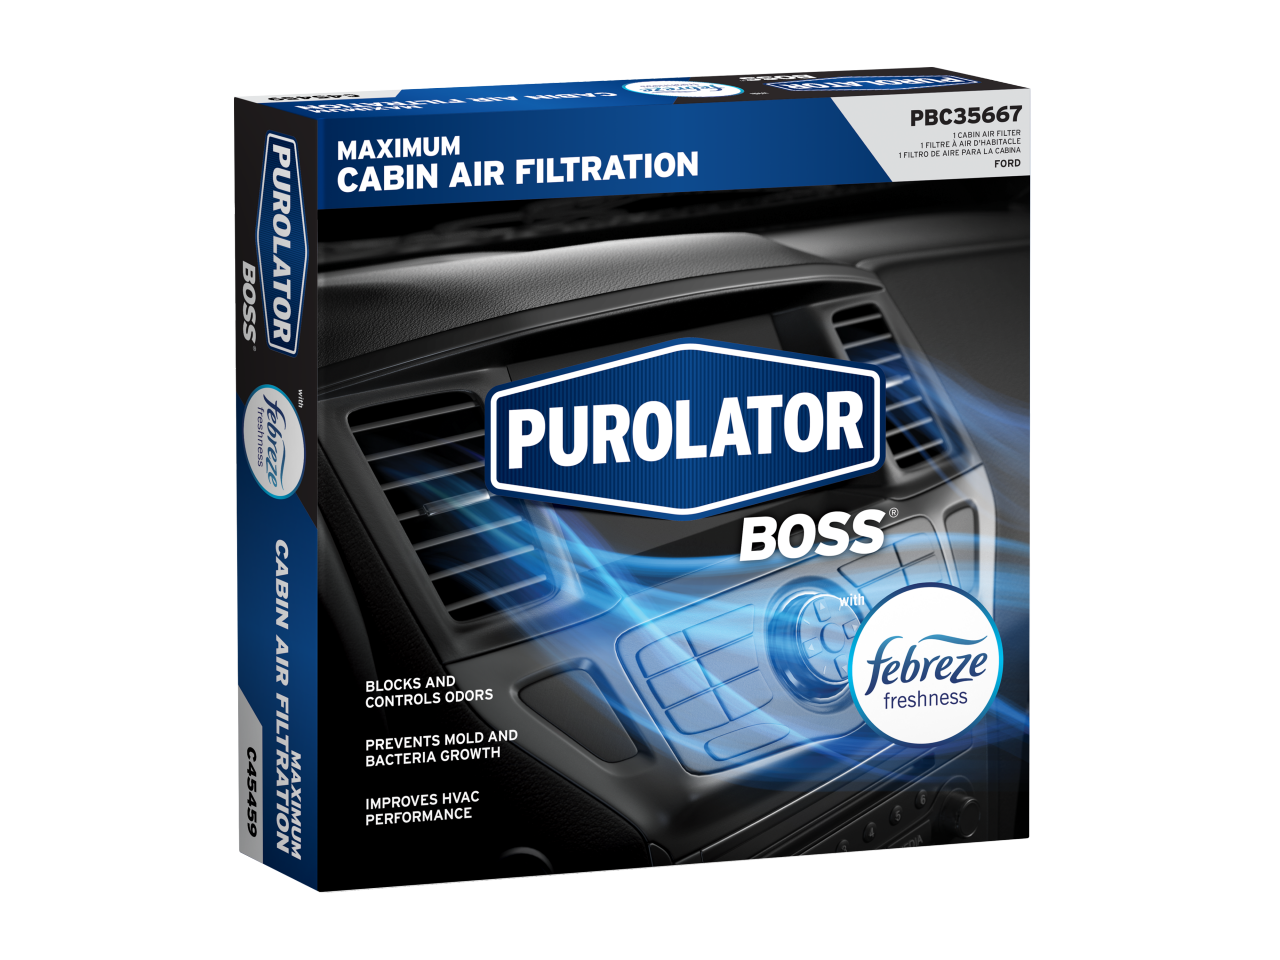 Los filtros de aire de cabina premium PurolatorBOSS® con Frescura Febreze bloquean y controlan los olores evitando a la vez el crecimiento de moho y bacterias.